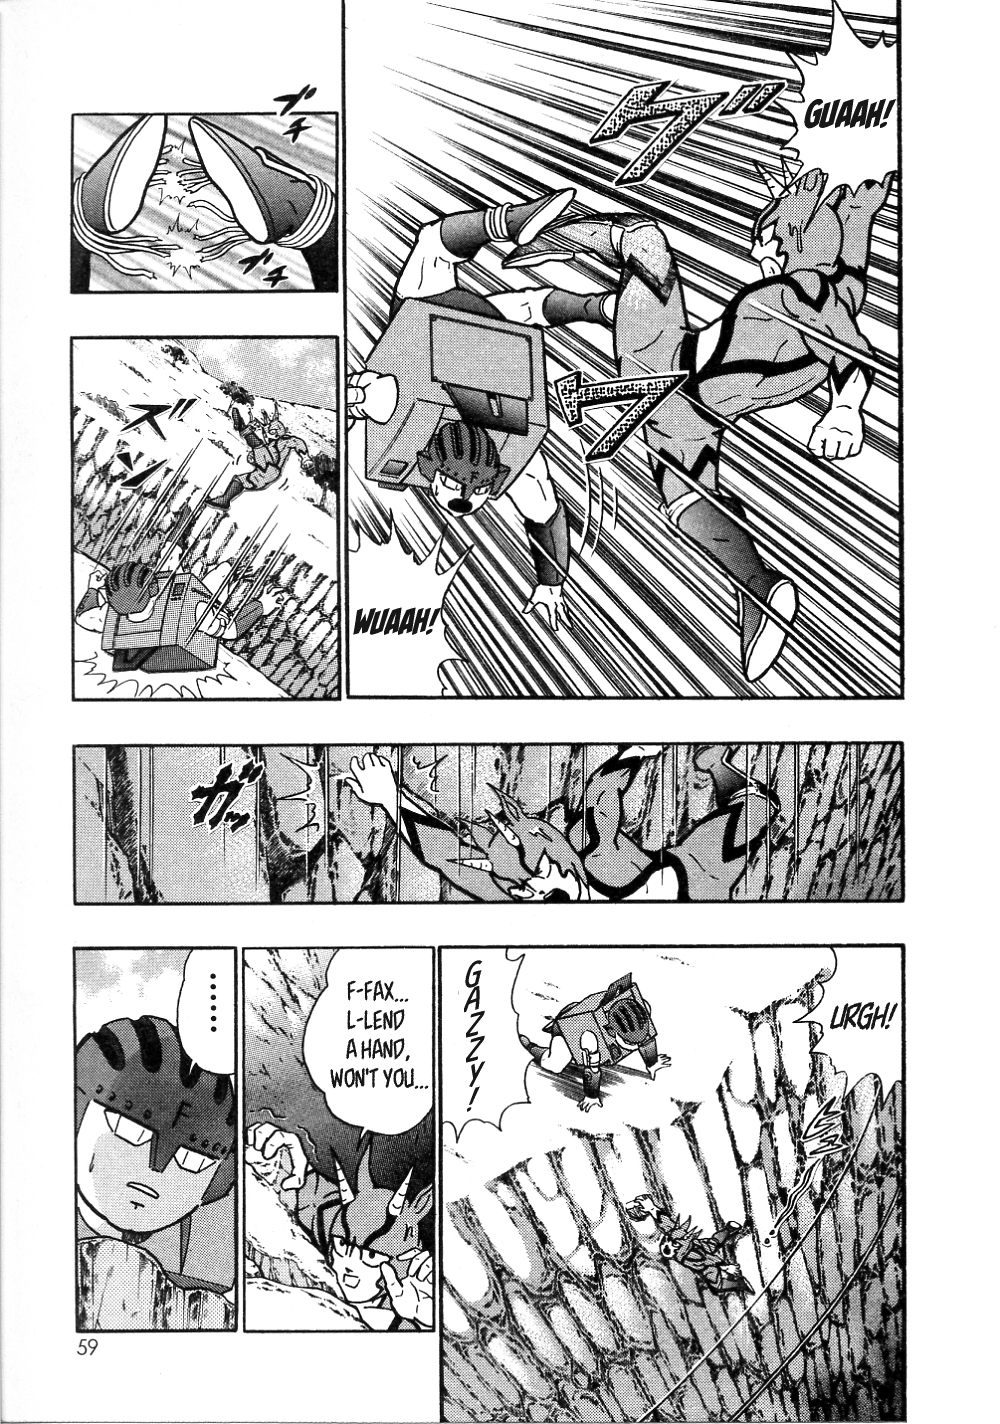 Kinnikuman II Sei: All Choujin Daishingeki Vol. 1 Ch. 5 I Am the Lone Gazelleman!